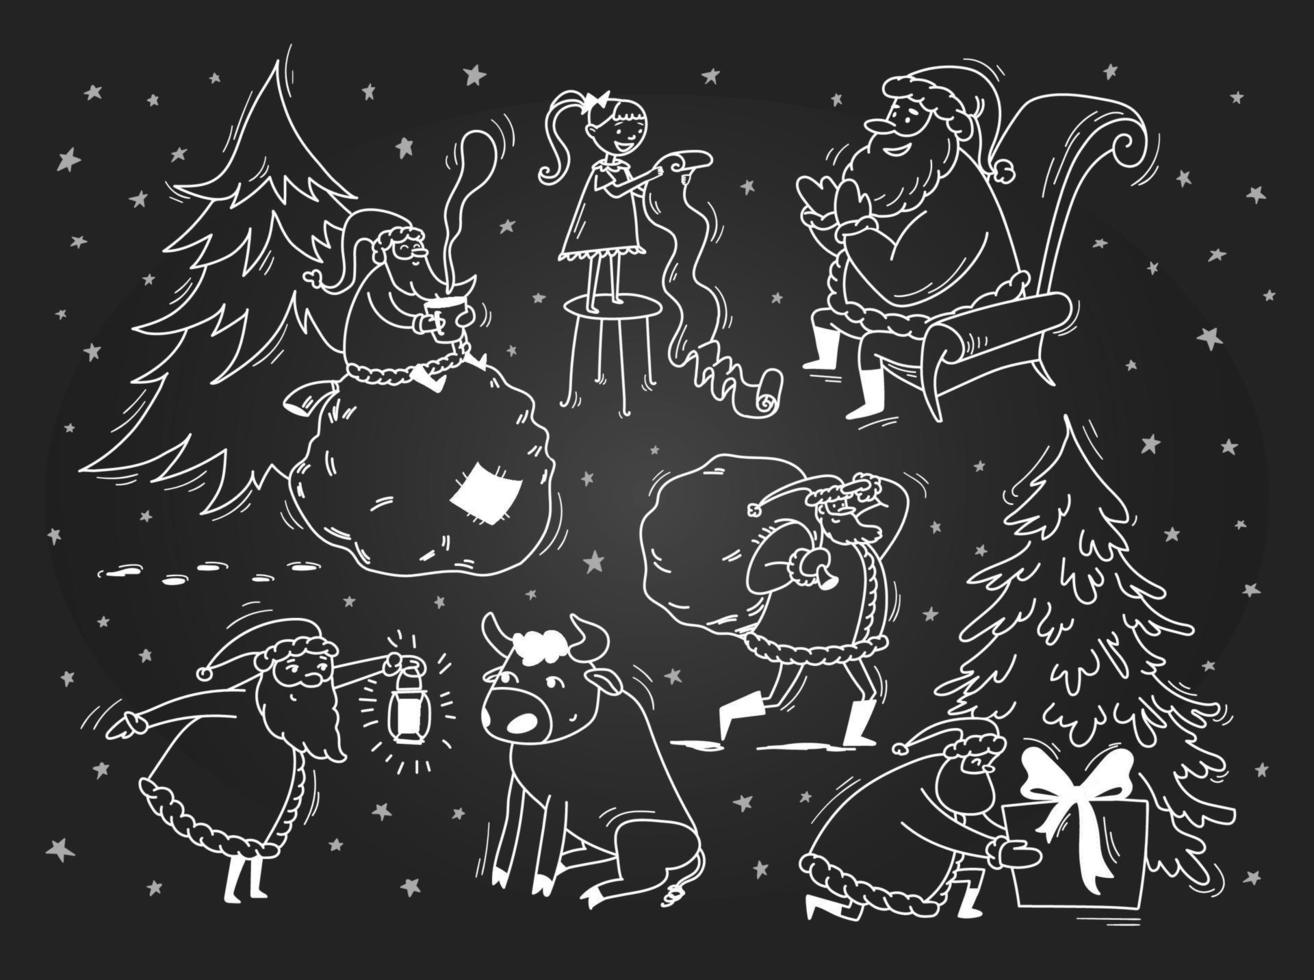 tomtens doodle samling. vit konturskiss på en krita tavla. Santa Claus vektor stock illustration. handritade berättelser om tomten, tjuren, flickan.